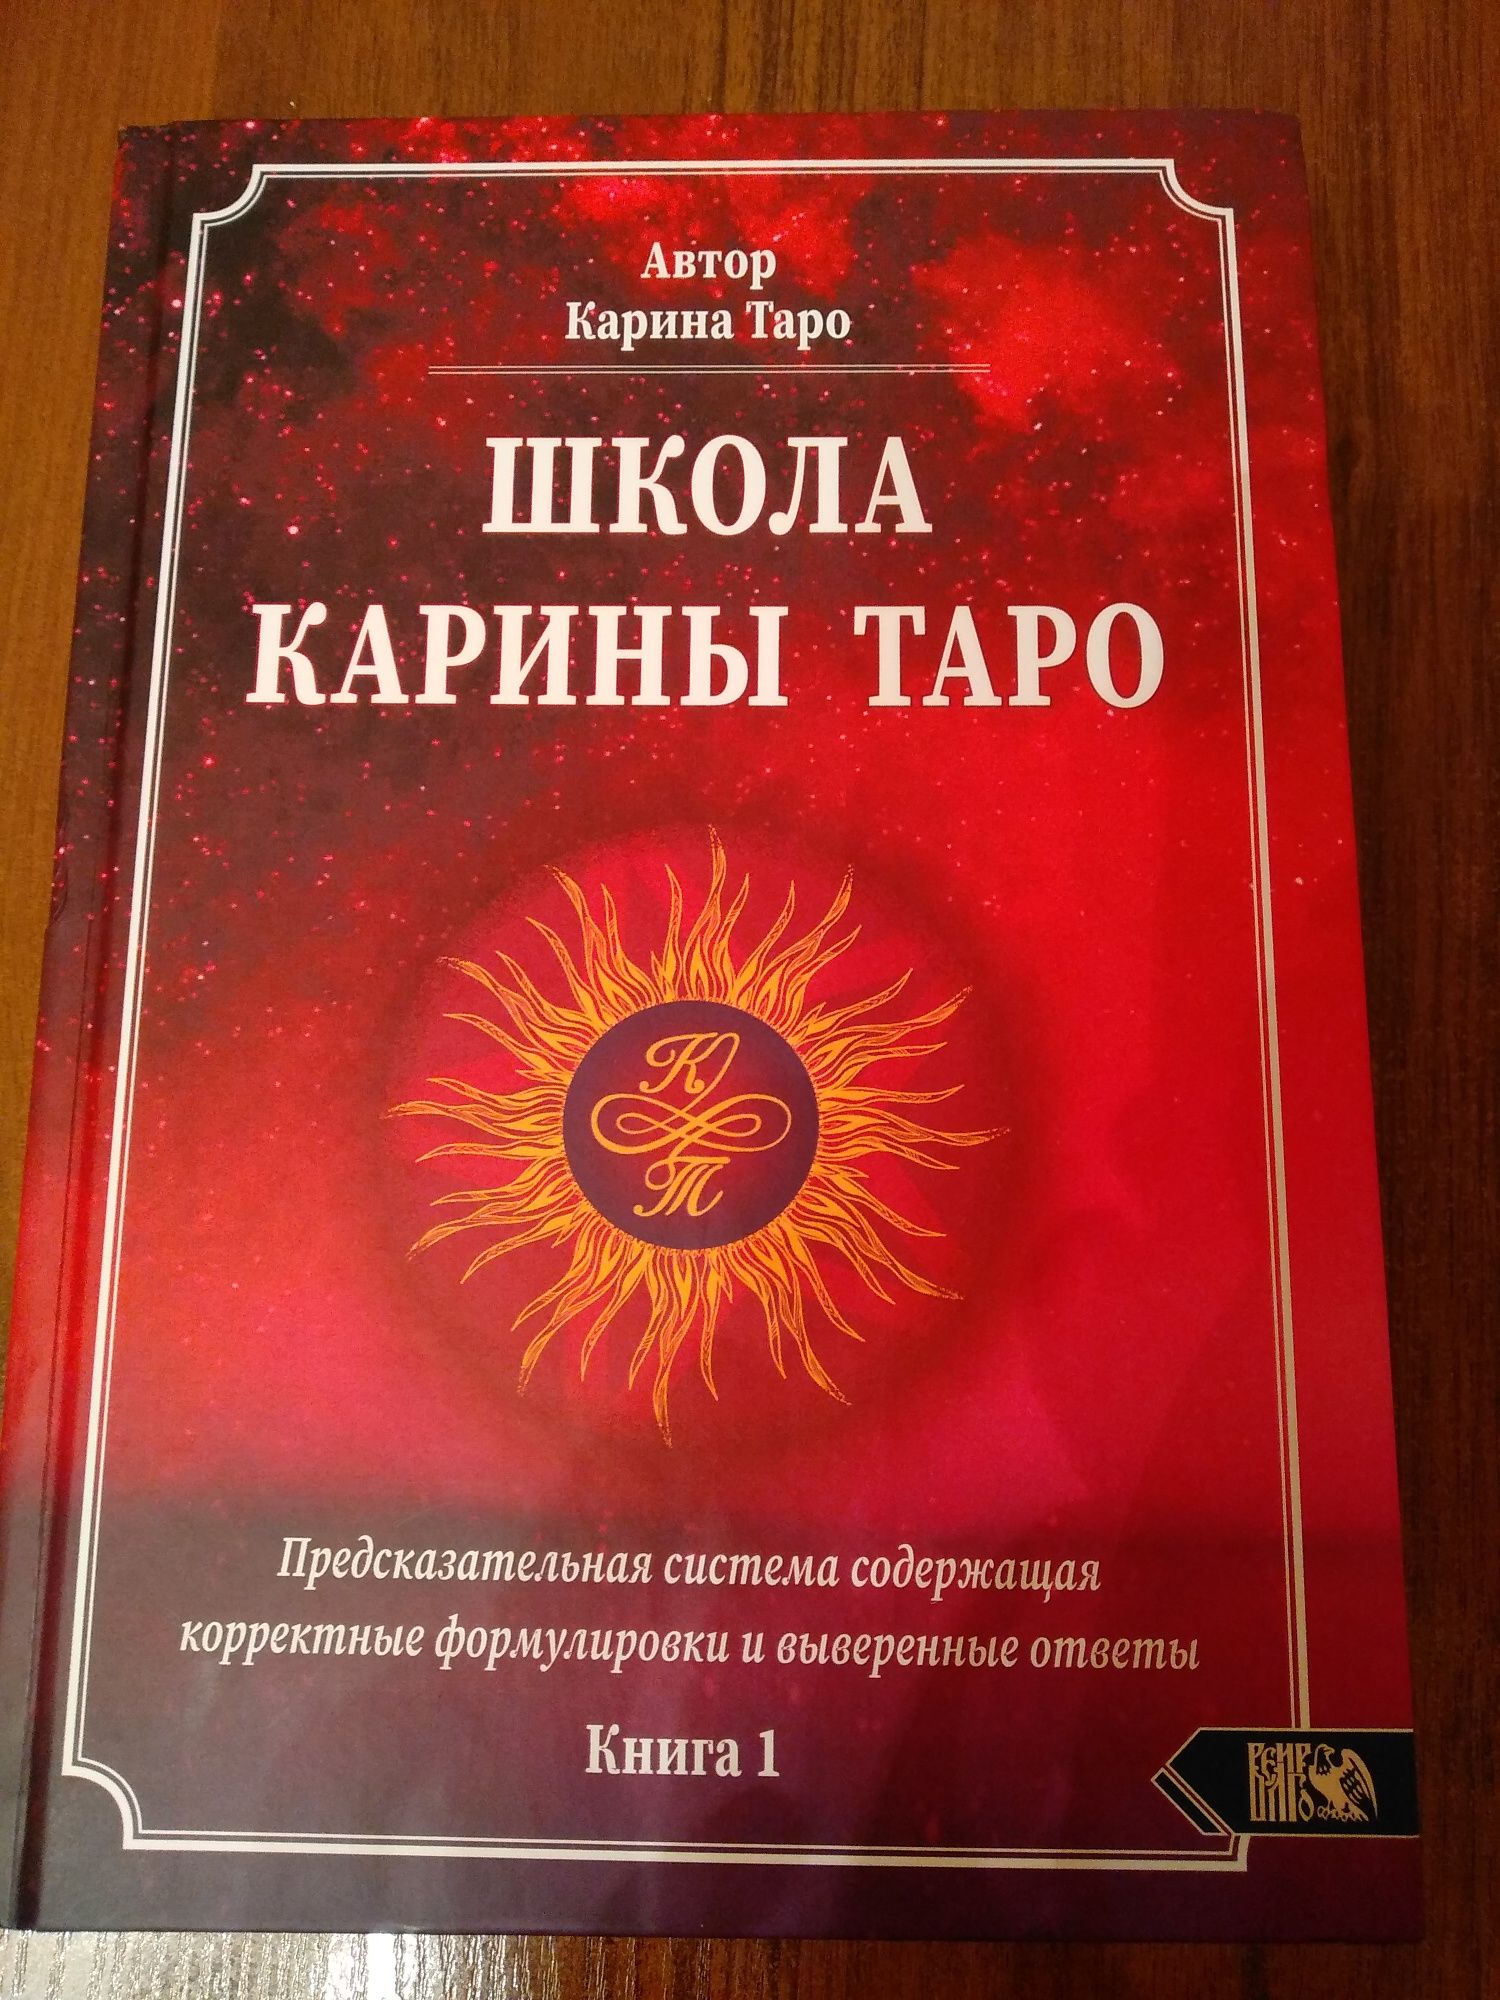 Книги Карины Таро